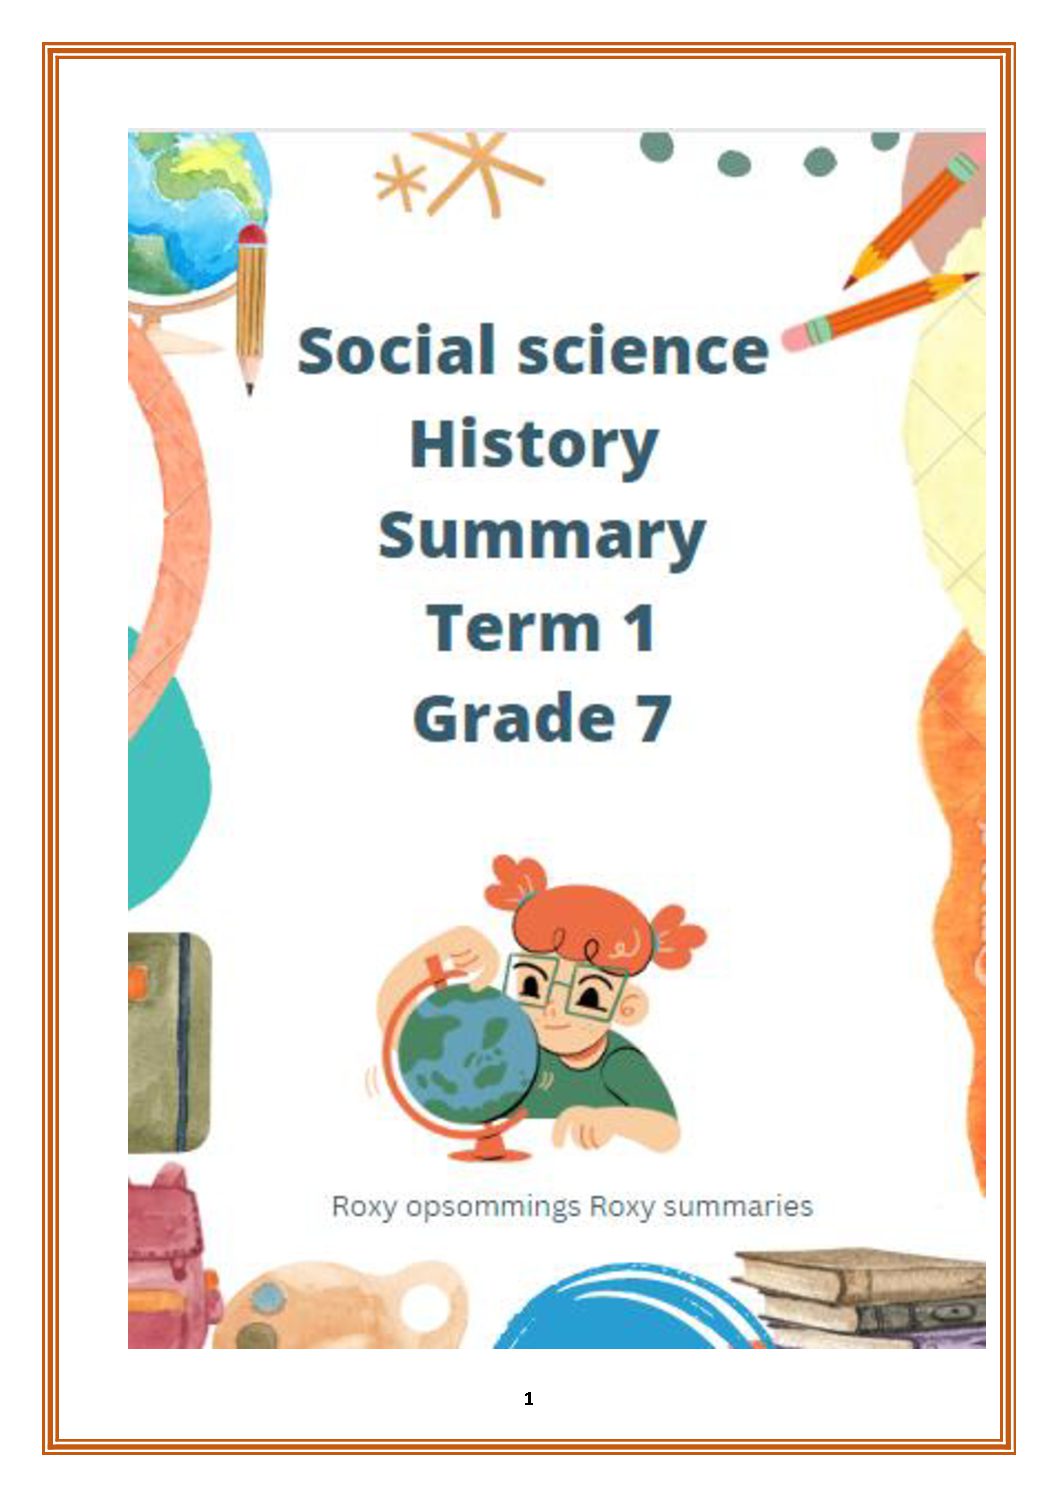 history summary term 1 grade 7 content Teacha